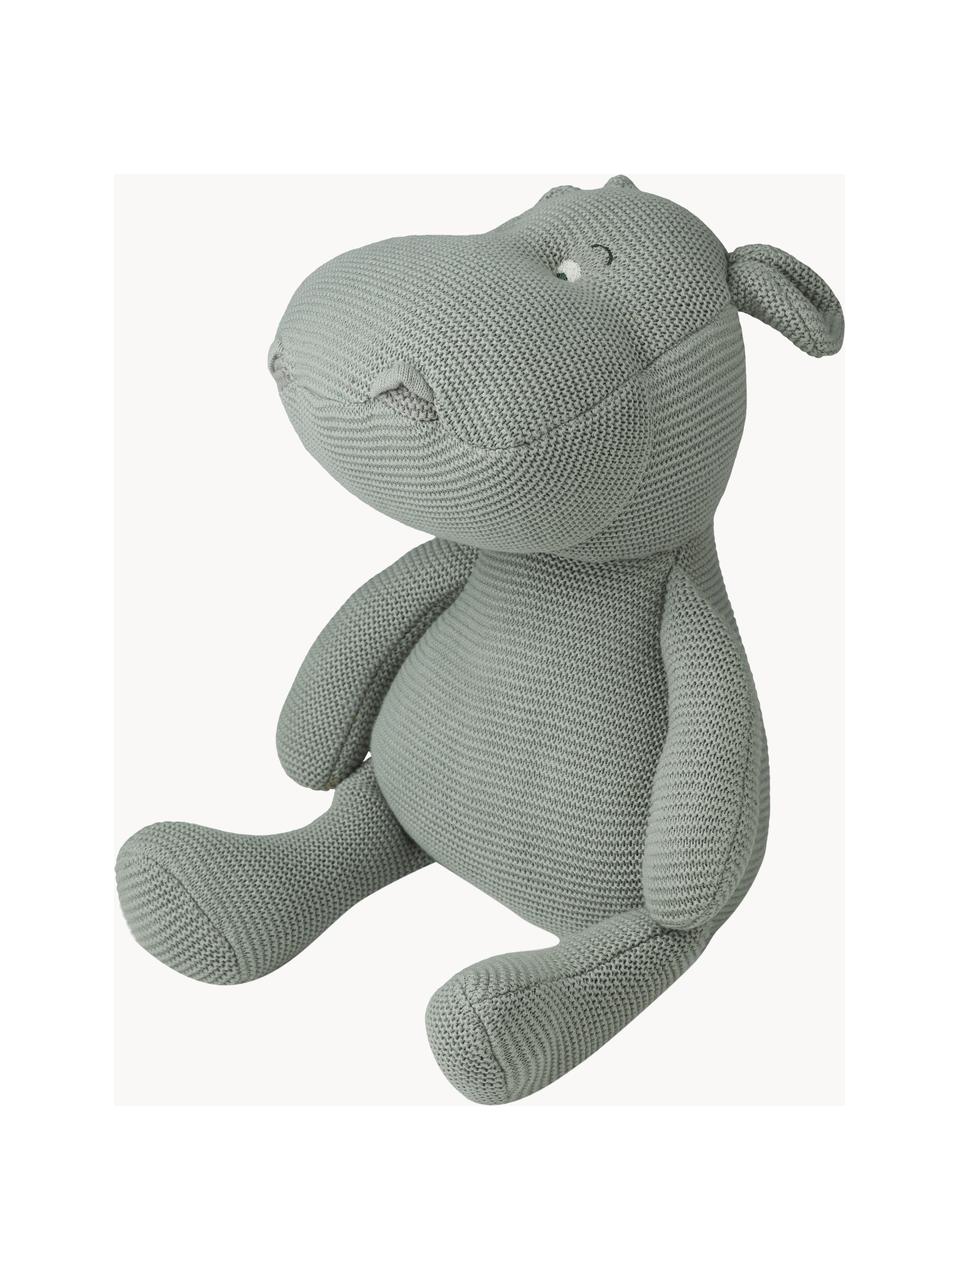 Przytulanka Bo Hippo Hippo, Tapicerka: 100% bawełna, Szałwiowy zielony, S 19 x W 27 cm